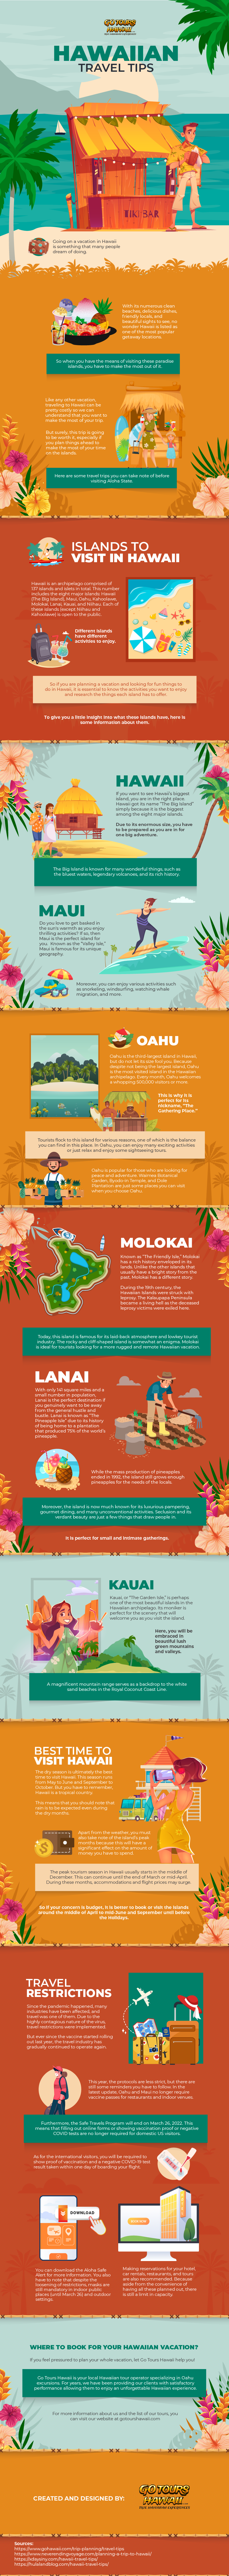 Hawaiian Travel Tips - Infographic ImageGR541e